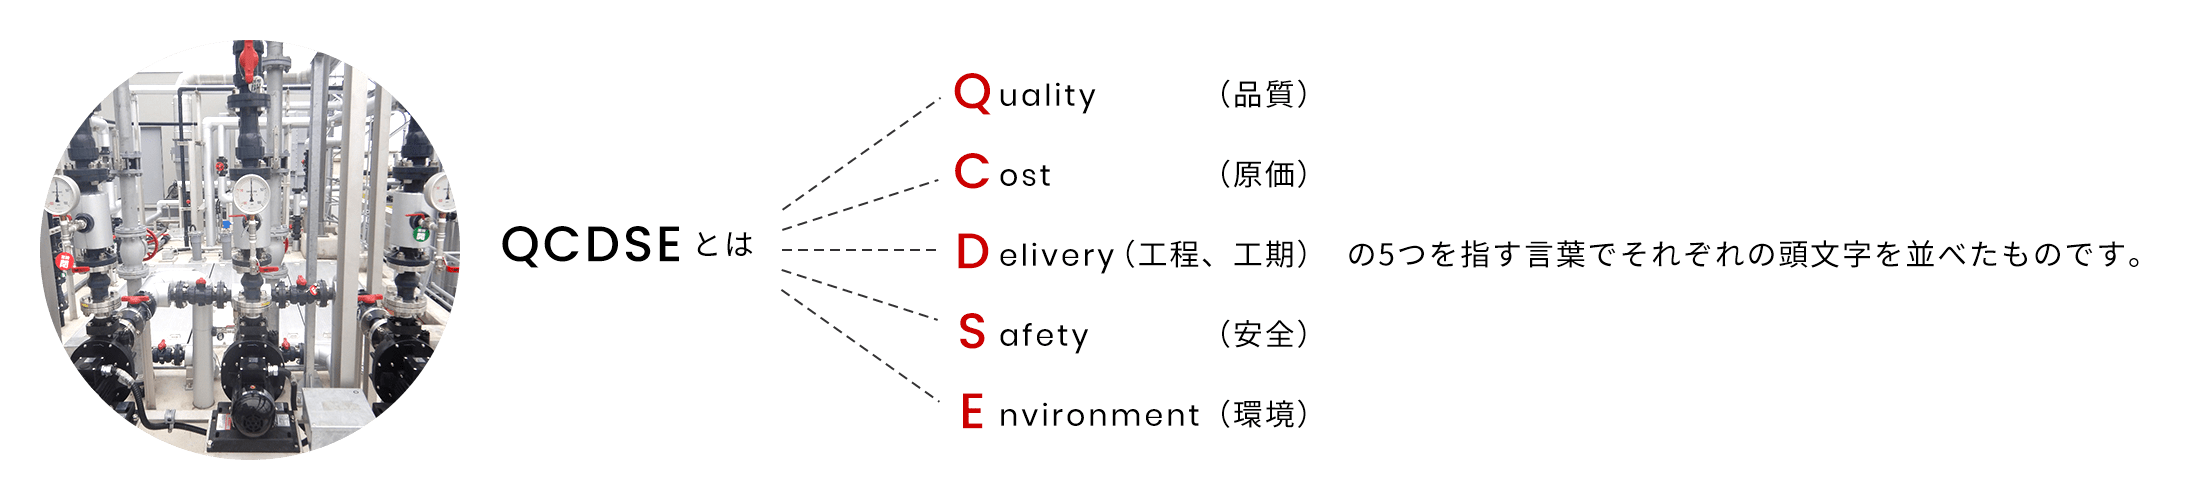 QCDSEとはquality（品質） cost（原価） delivery（工程、工期） safety（安全） environment（環境）の5つを指す言葉でそれぞれの頭文字を並べたものです。